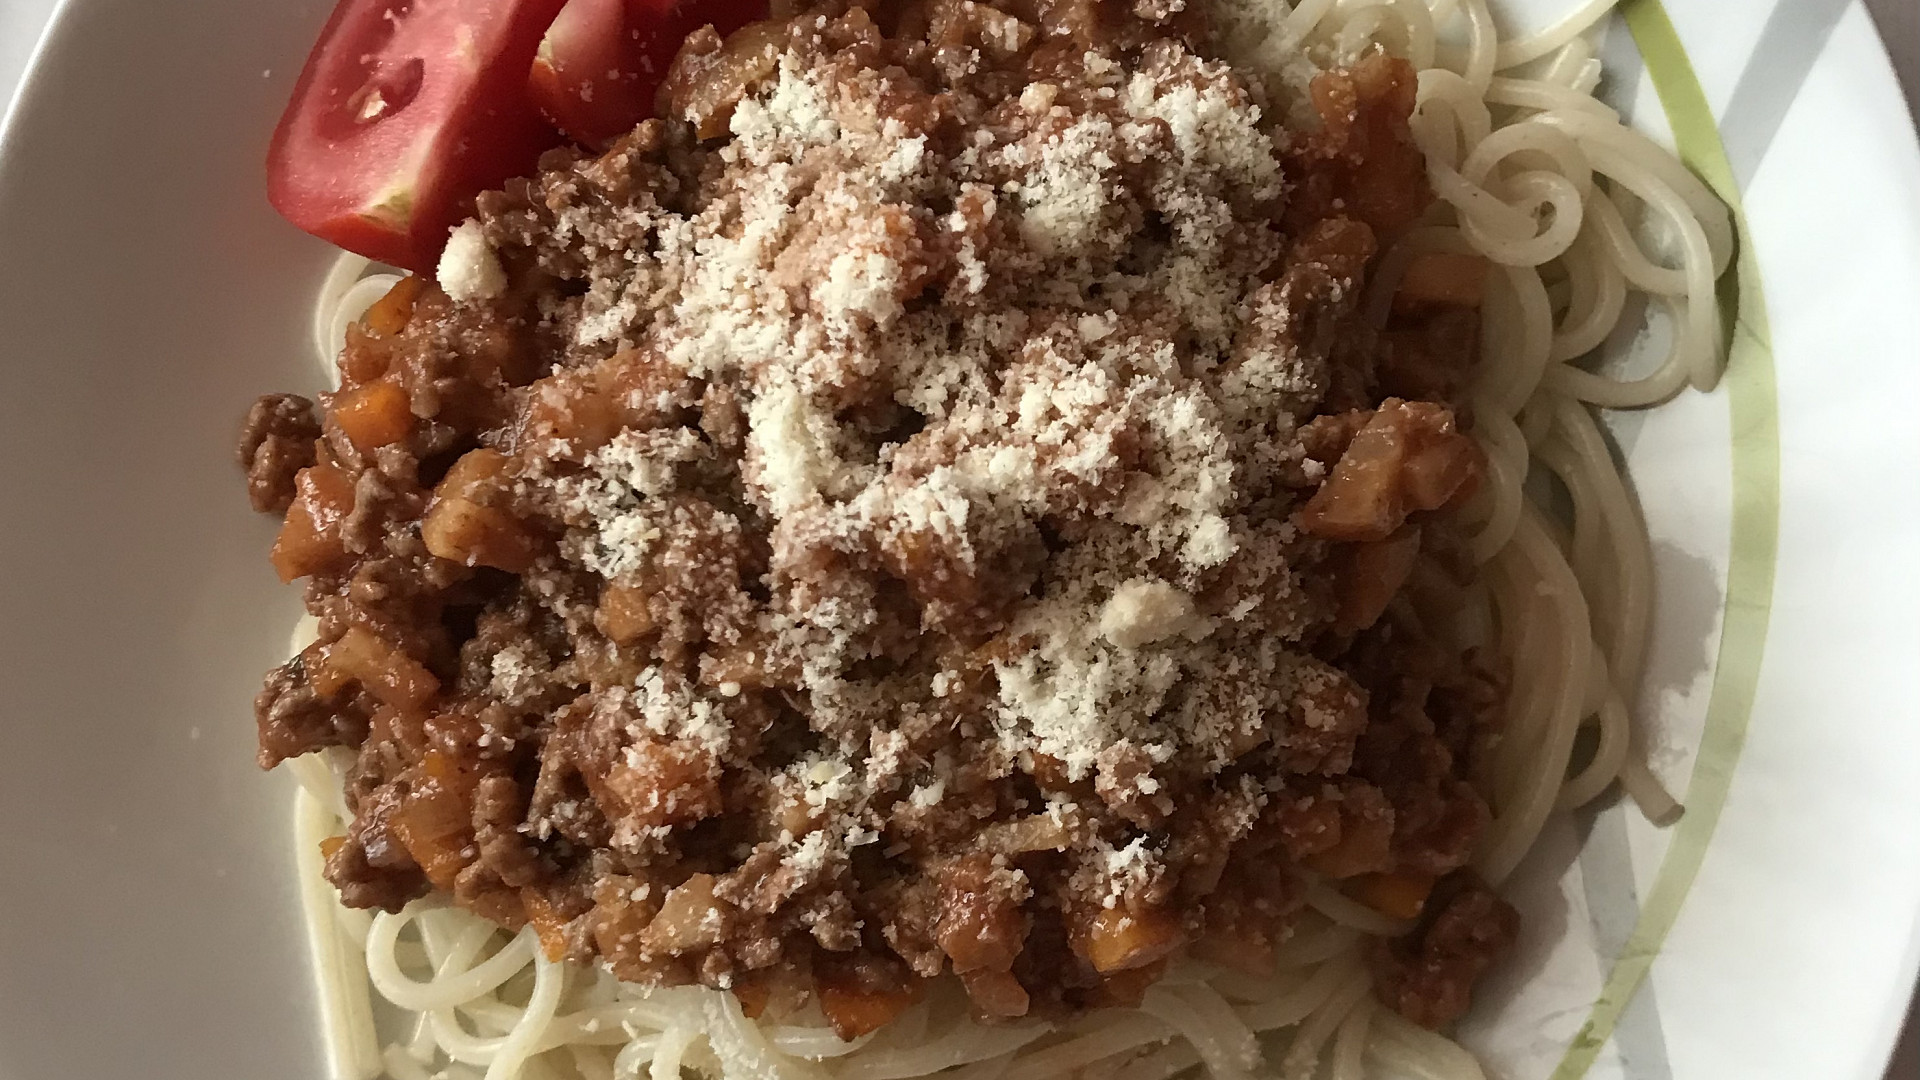 Špagety s boloňskou omáčkou